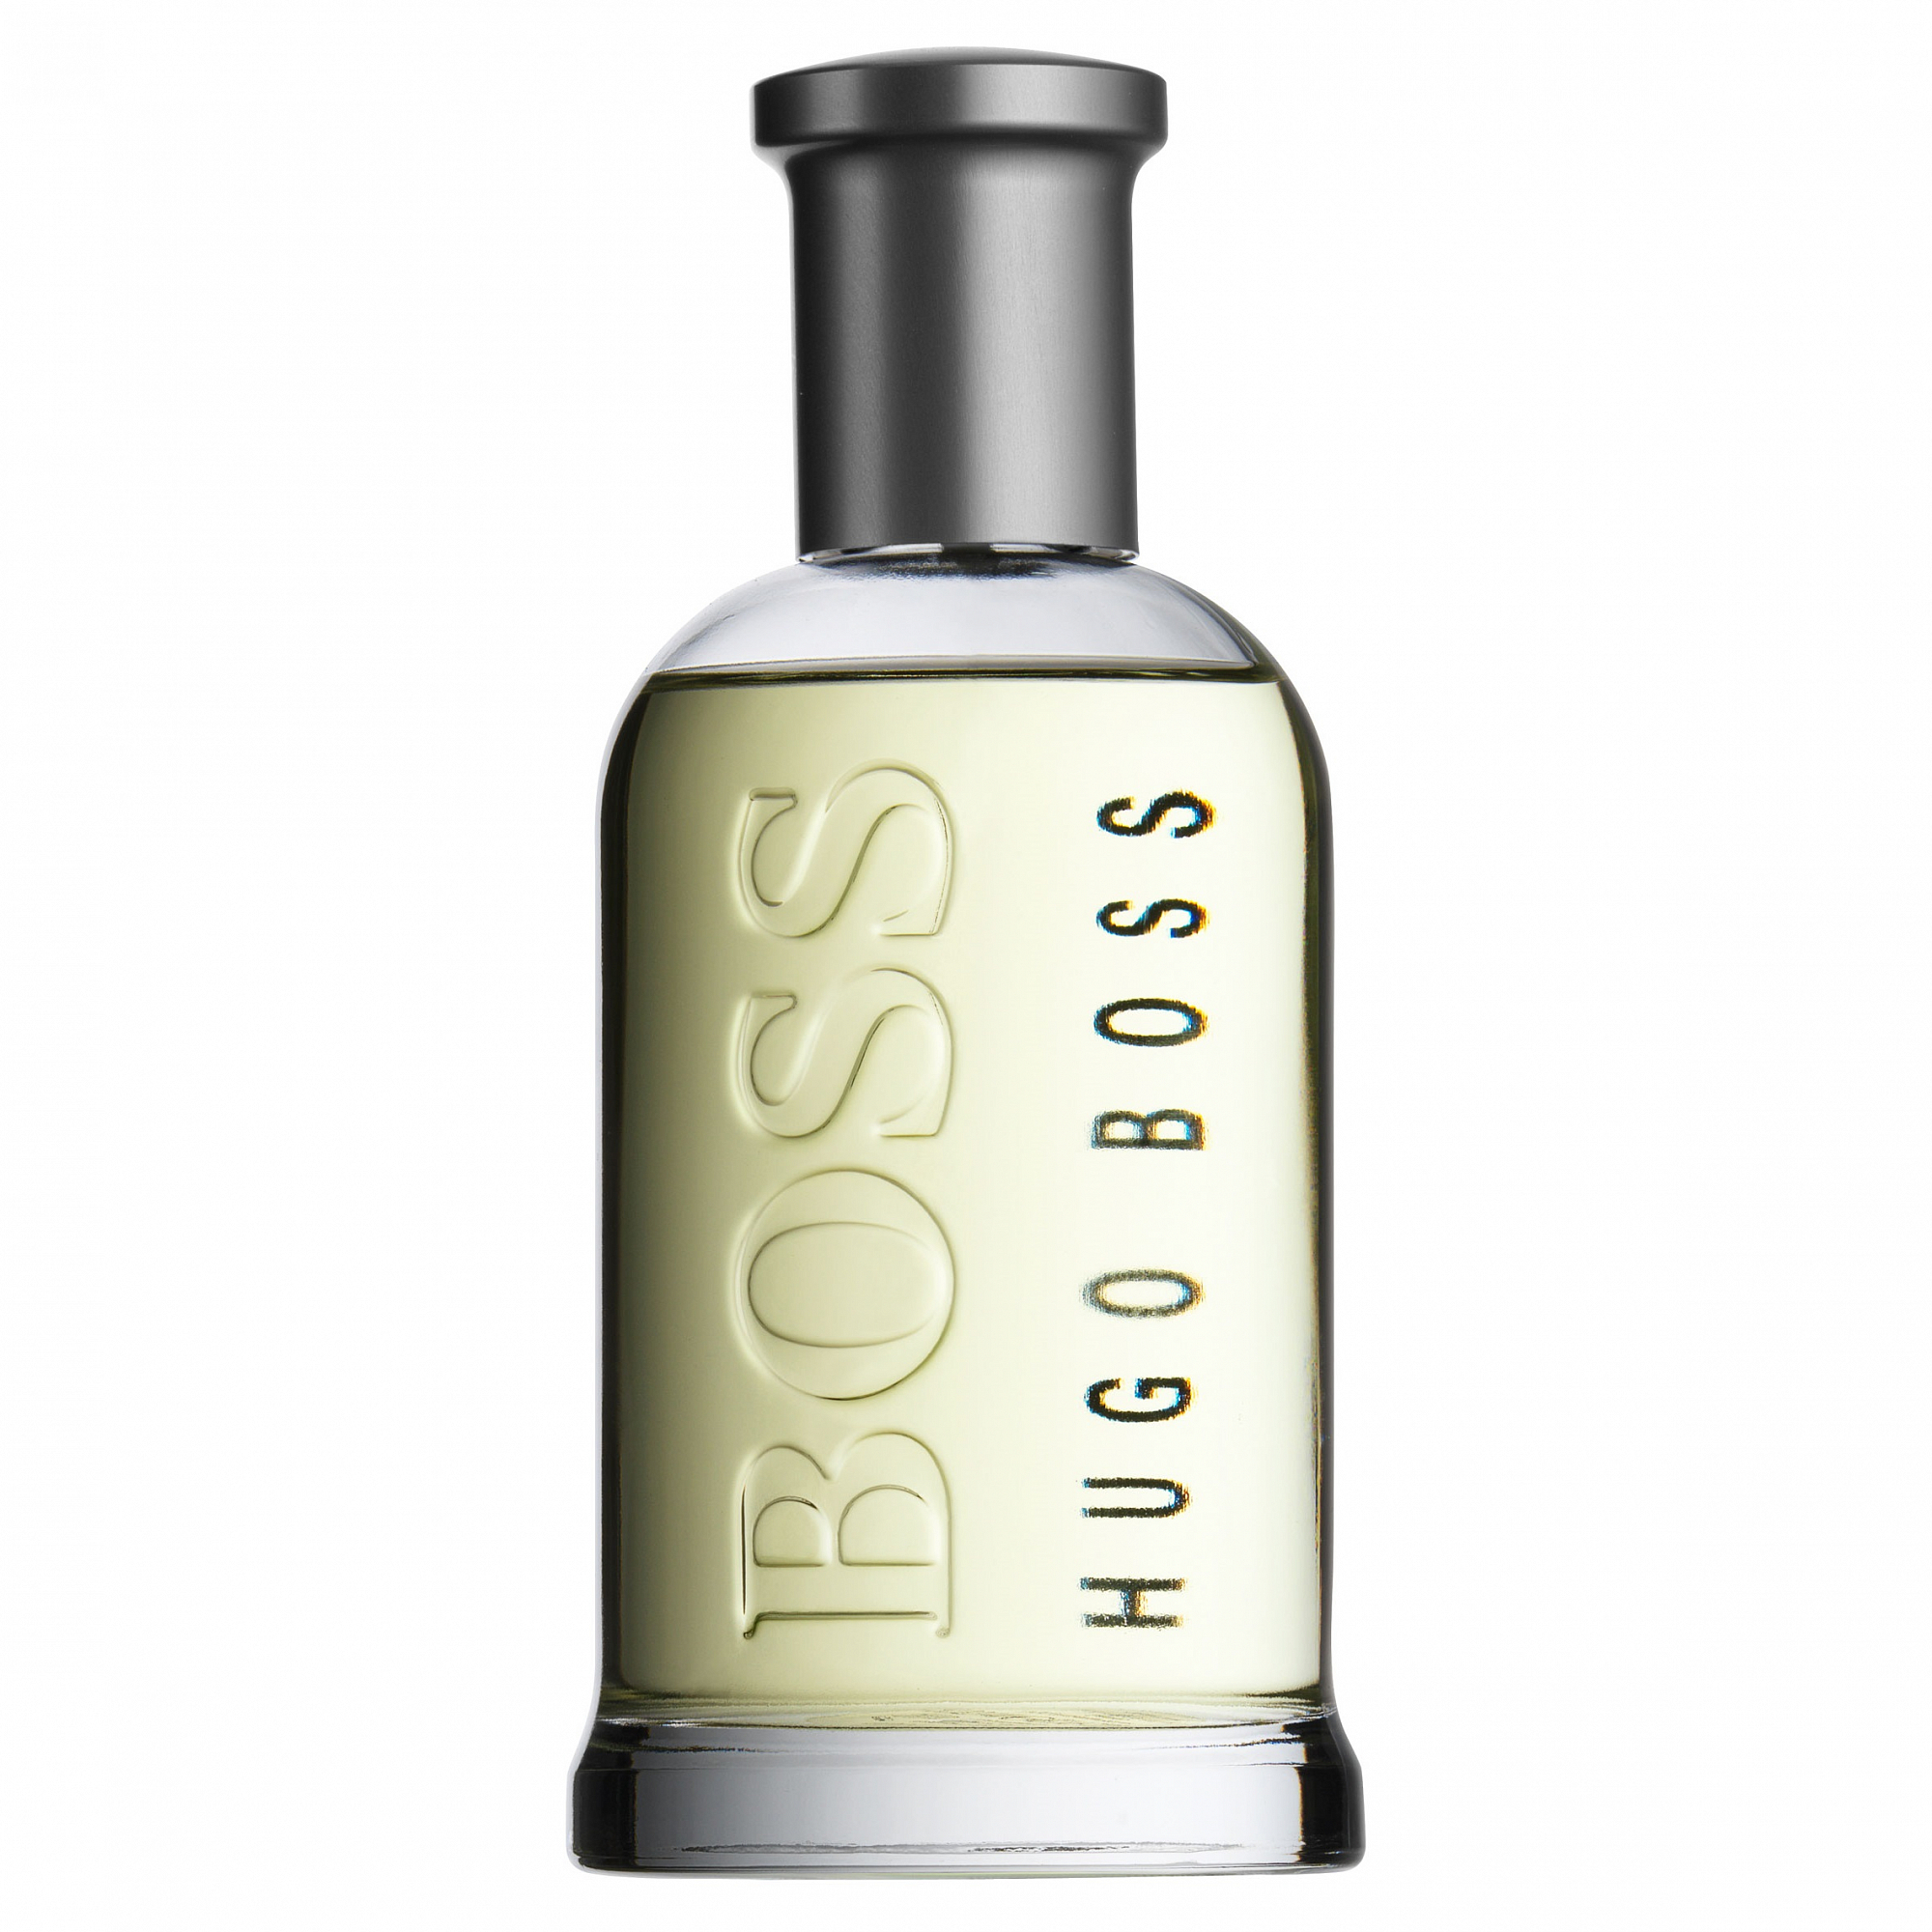 Hugo мужская туалетная вода. Hugo Boss Bottled Eau de Toilette. Hugo Boss Boss 6, EDT., 100 ml. Hugo Boss Boss Bottled. Hugo Boss Boss Bottled №6.